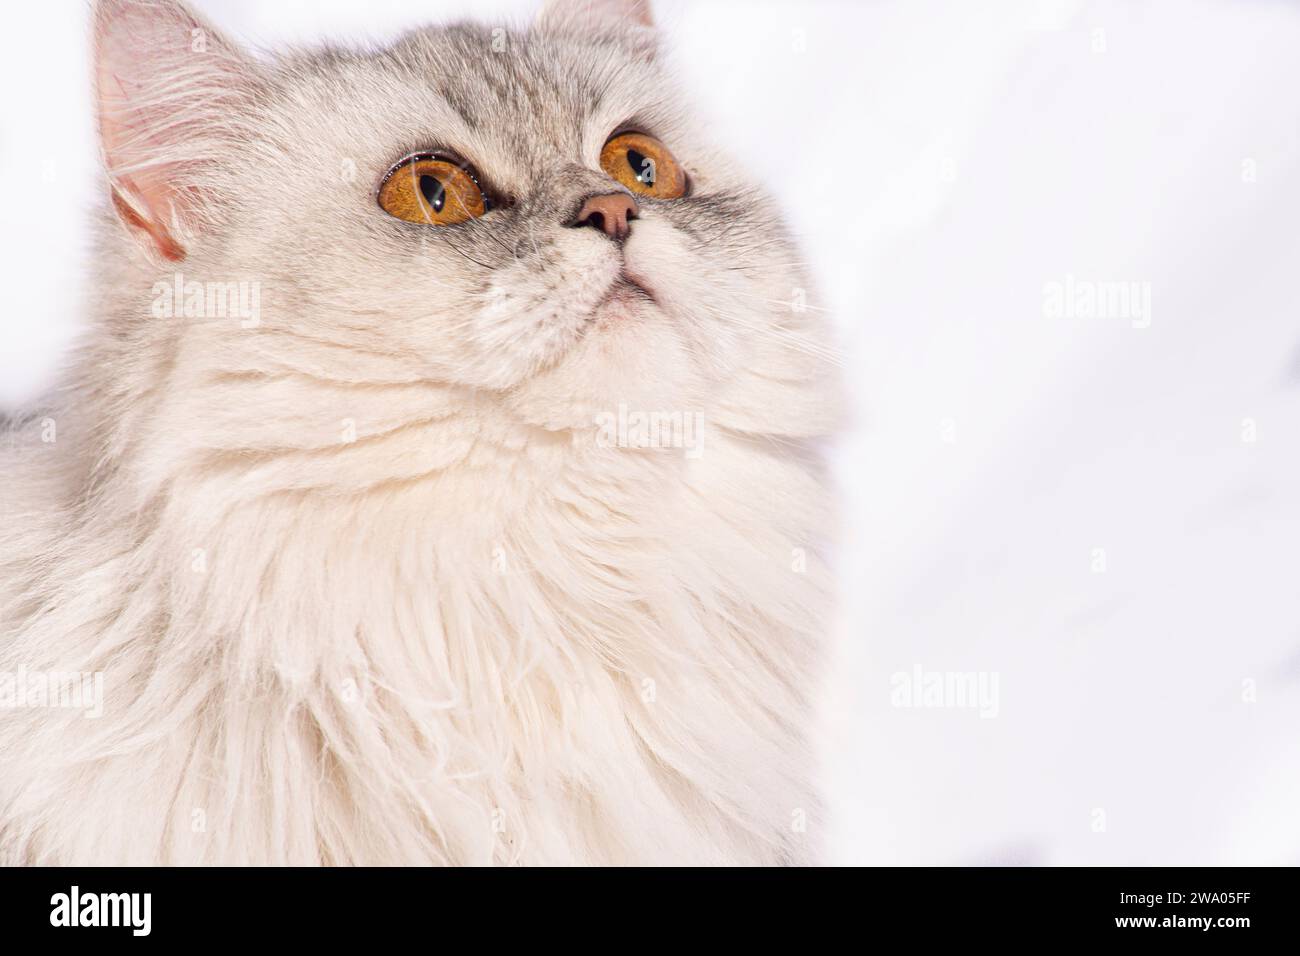 Questo bellissimo gattino persiano trasuda eleganza con le sue delicate caratteristiche e un meraviglioso cappotto di pelliccia bianca soffice. Gli occhi dorati e larghi parlano di... Foto Stock